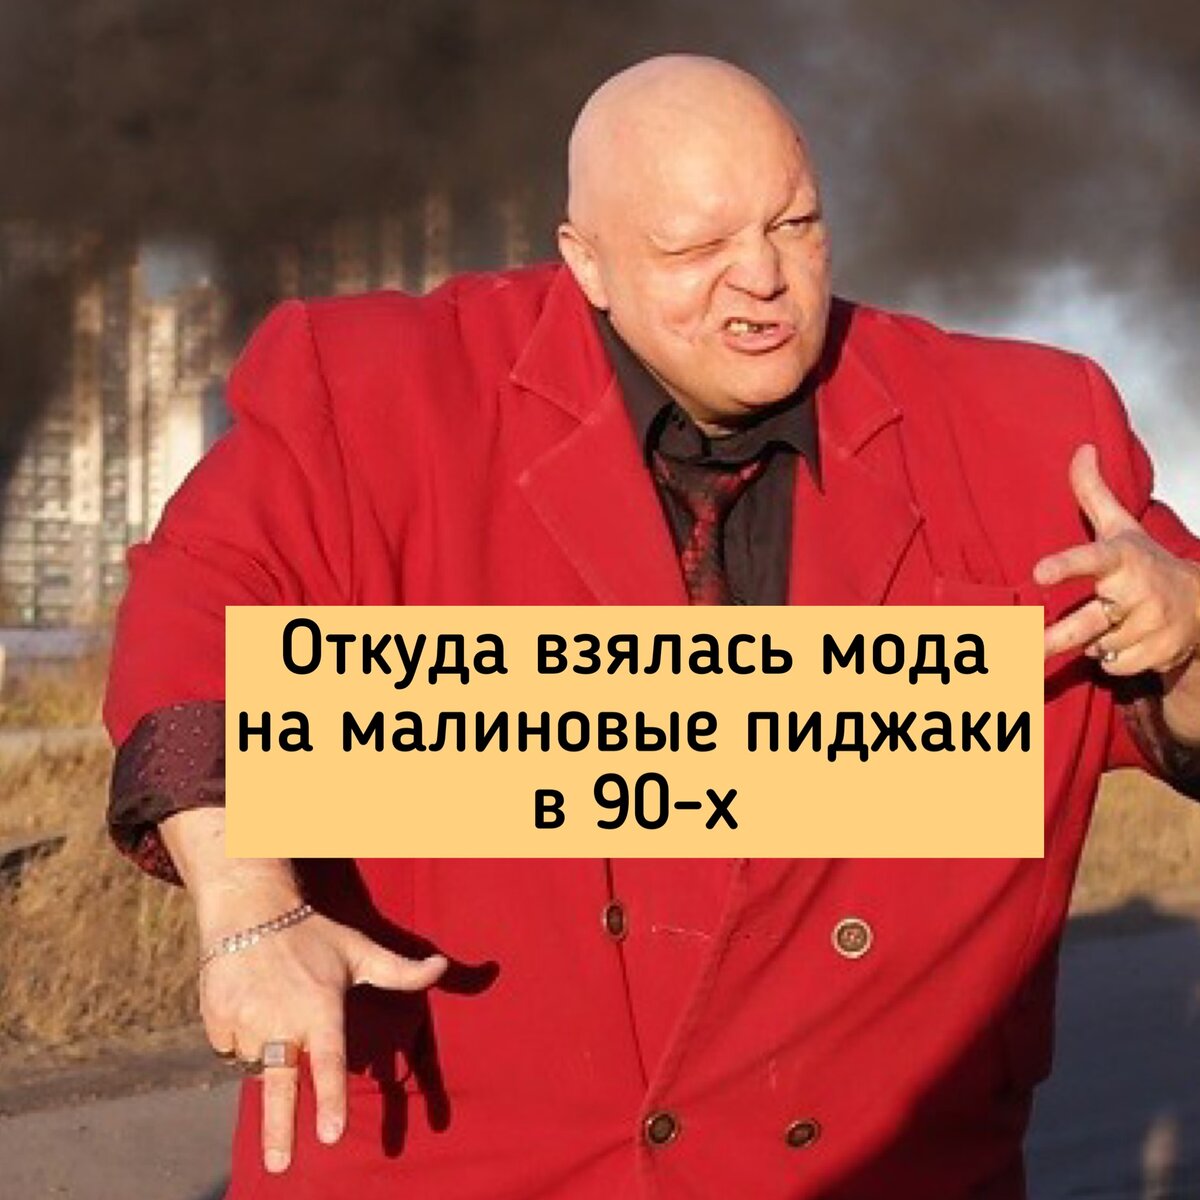   Кожаная барсетка, цепь толщиной с палец, сотовый телефон и малиновый пиджак - вот униформа успешного человека в России 90х.